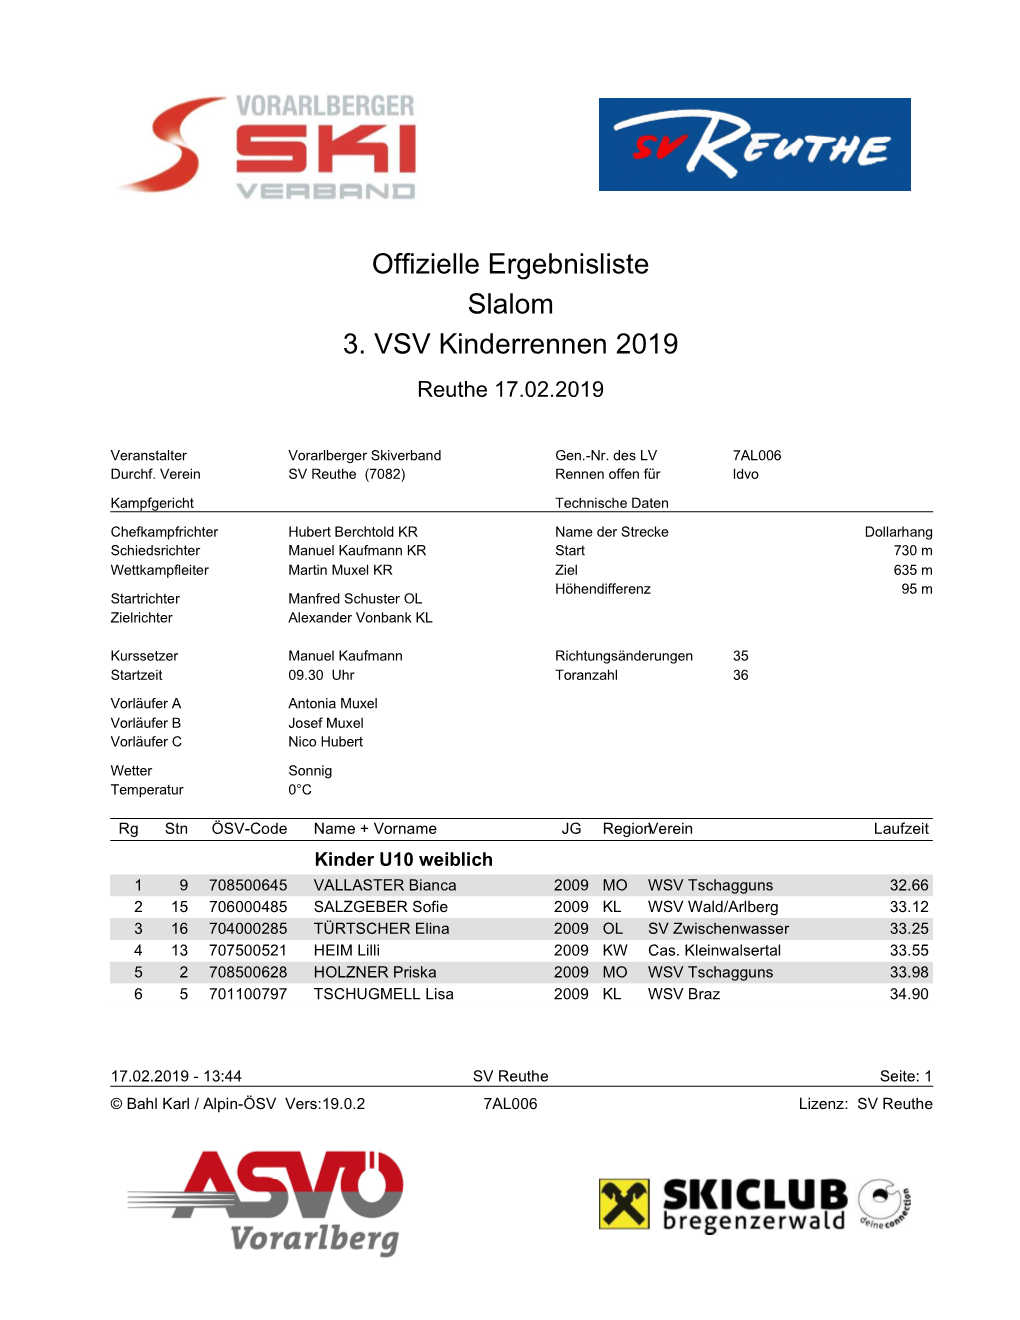 Offizielle Ergebnisliste Slalom 3. VSV Kinderrennen 2019 Reuthe 17.02.2019